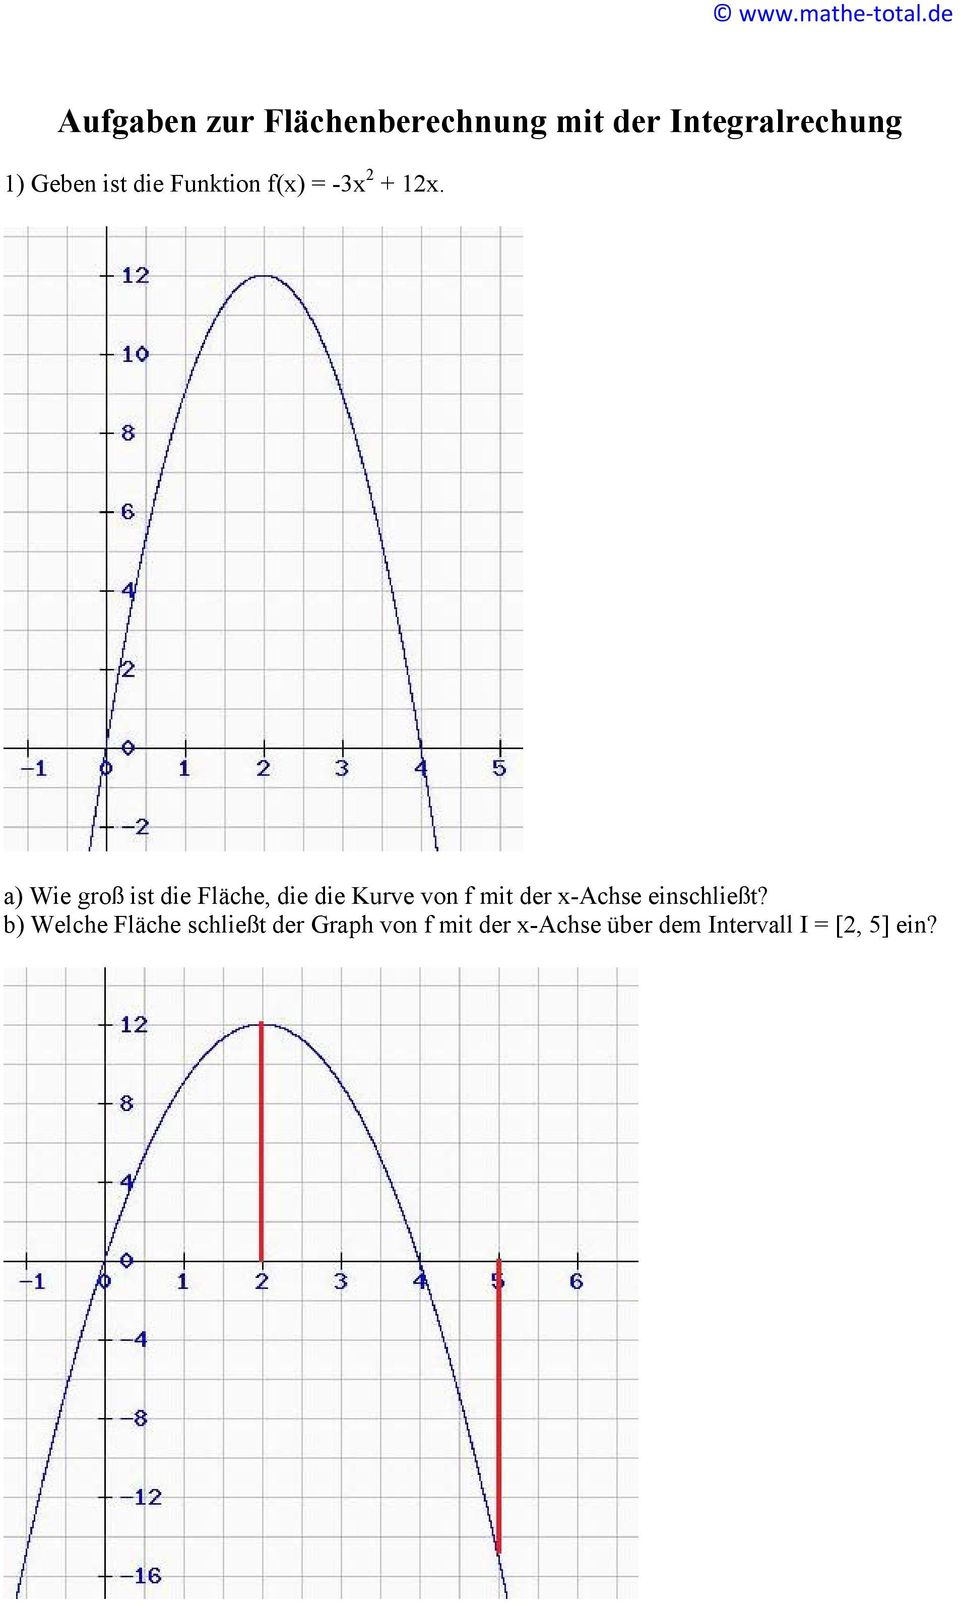 a) Wie groß ist die Fläche, die die Kurve von f mit der x-chse